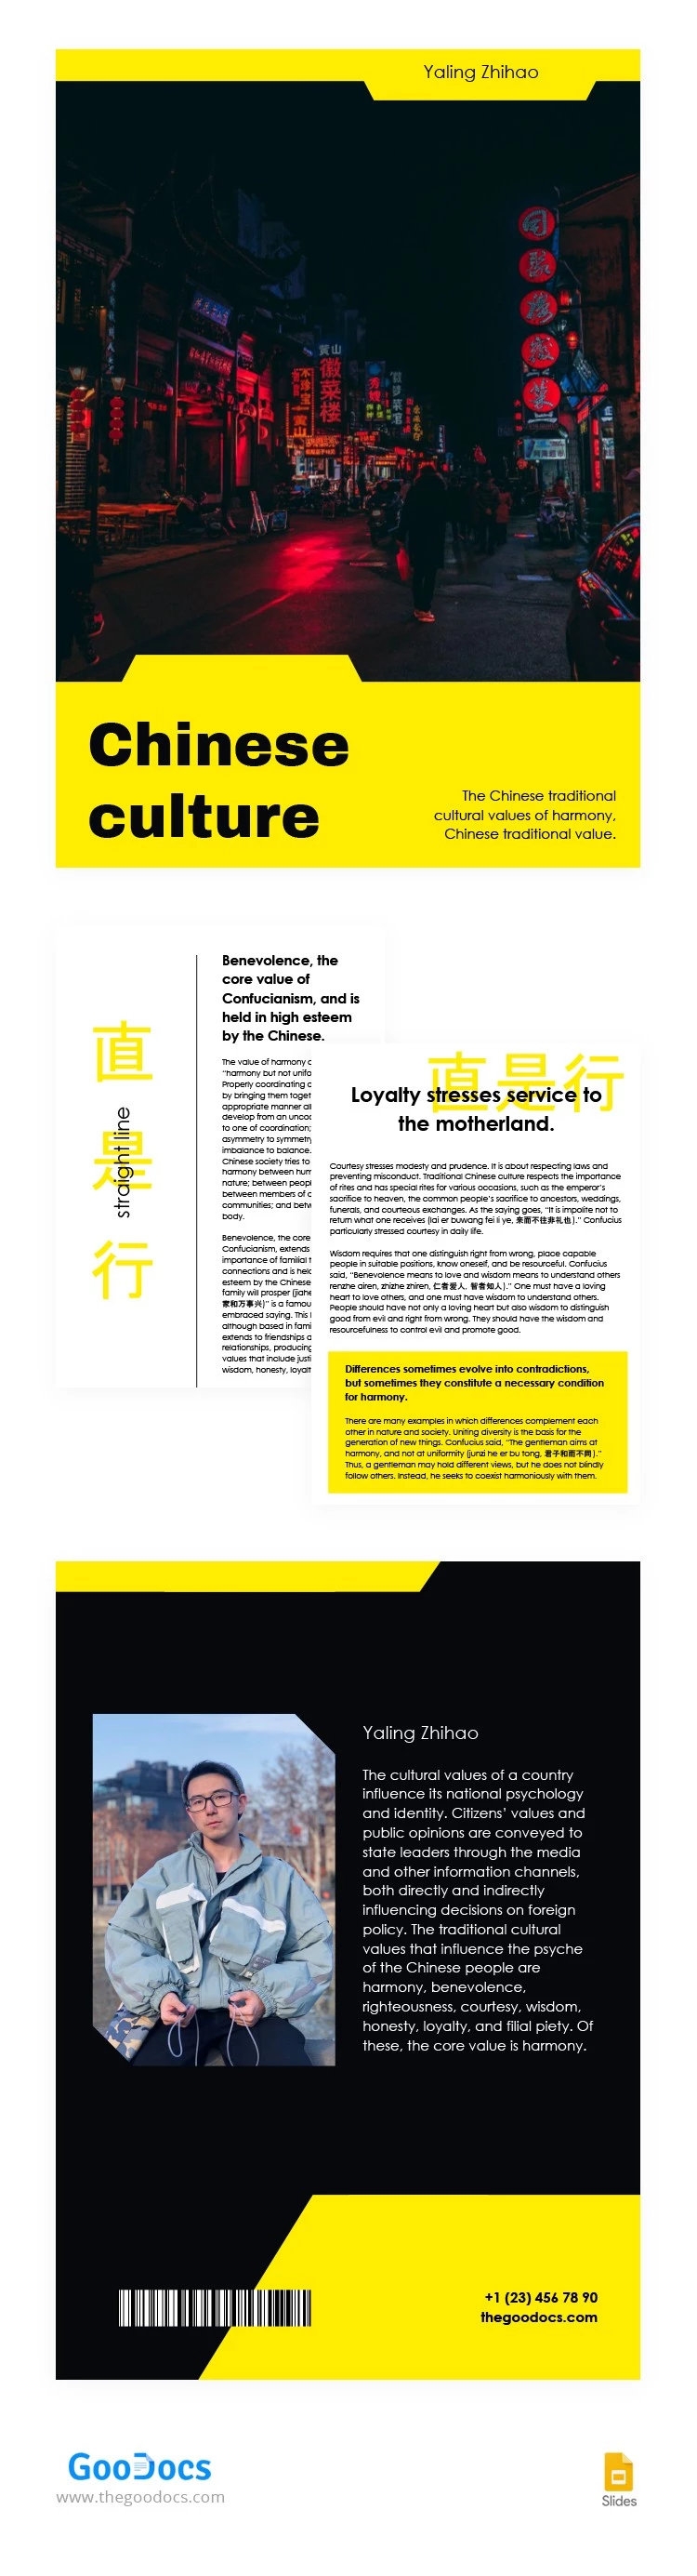 Livre sur la culture chinoise - free Google Docs Template - 10063612